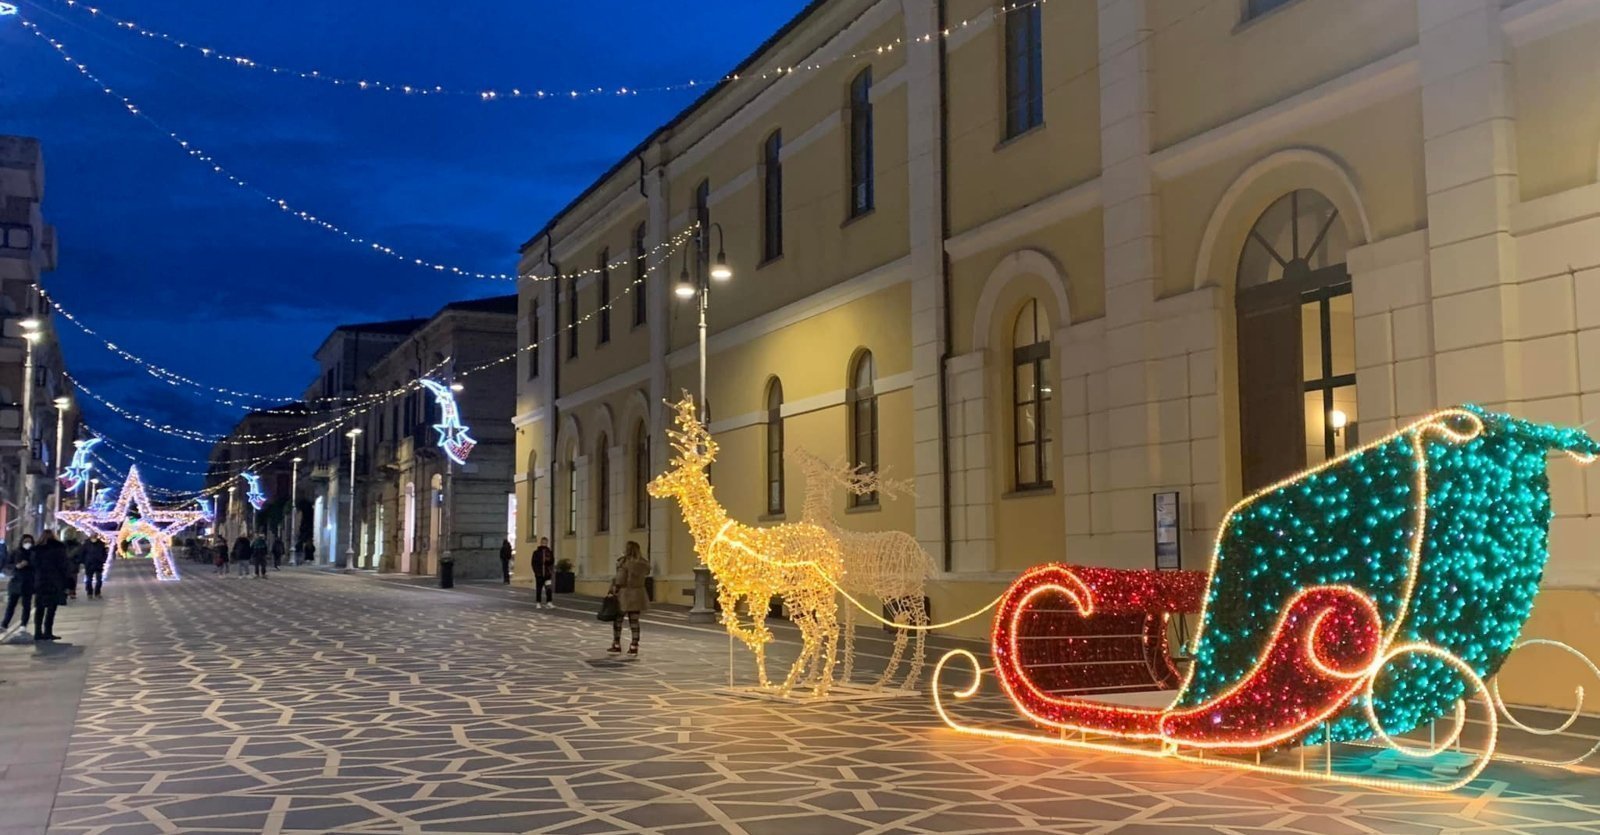 Natale a Lanciano, fra le Luci Natalizie lungo le vie del Centro storico. Guarda tutte le foto Social Media Mammage (4)